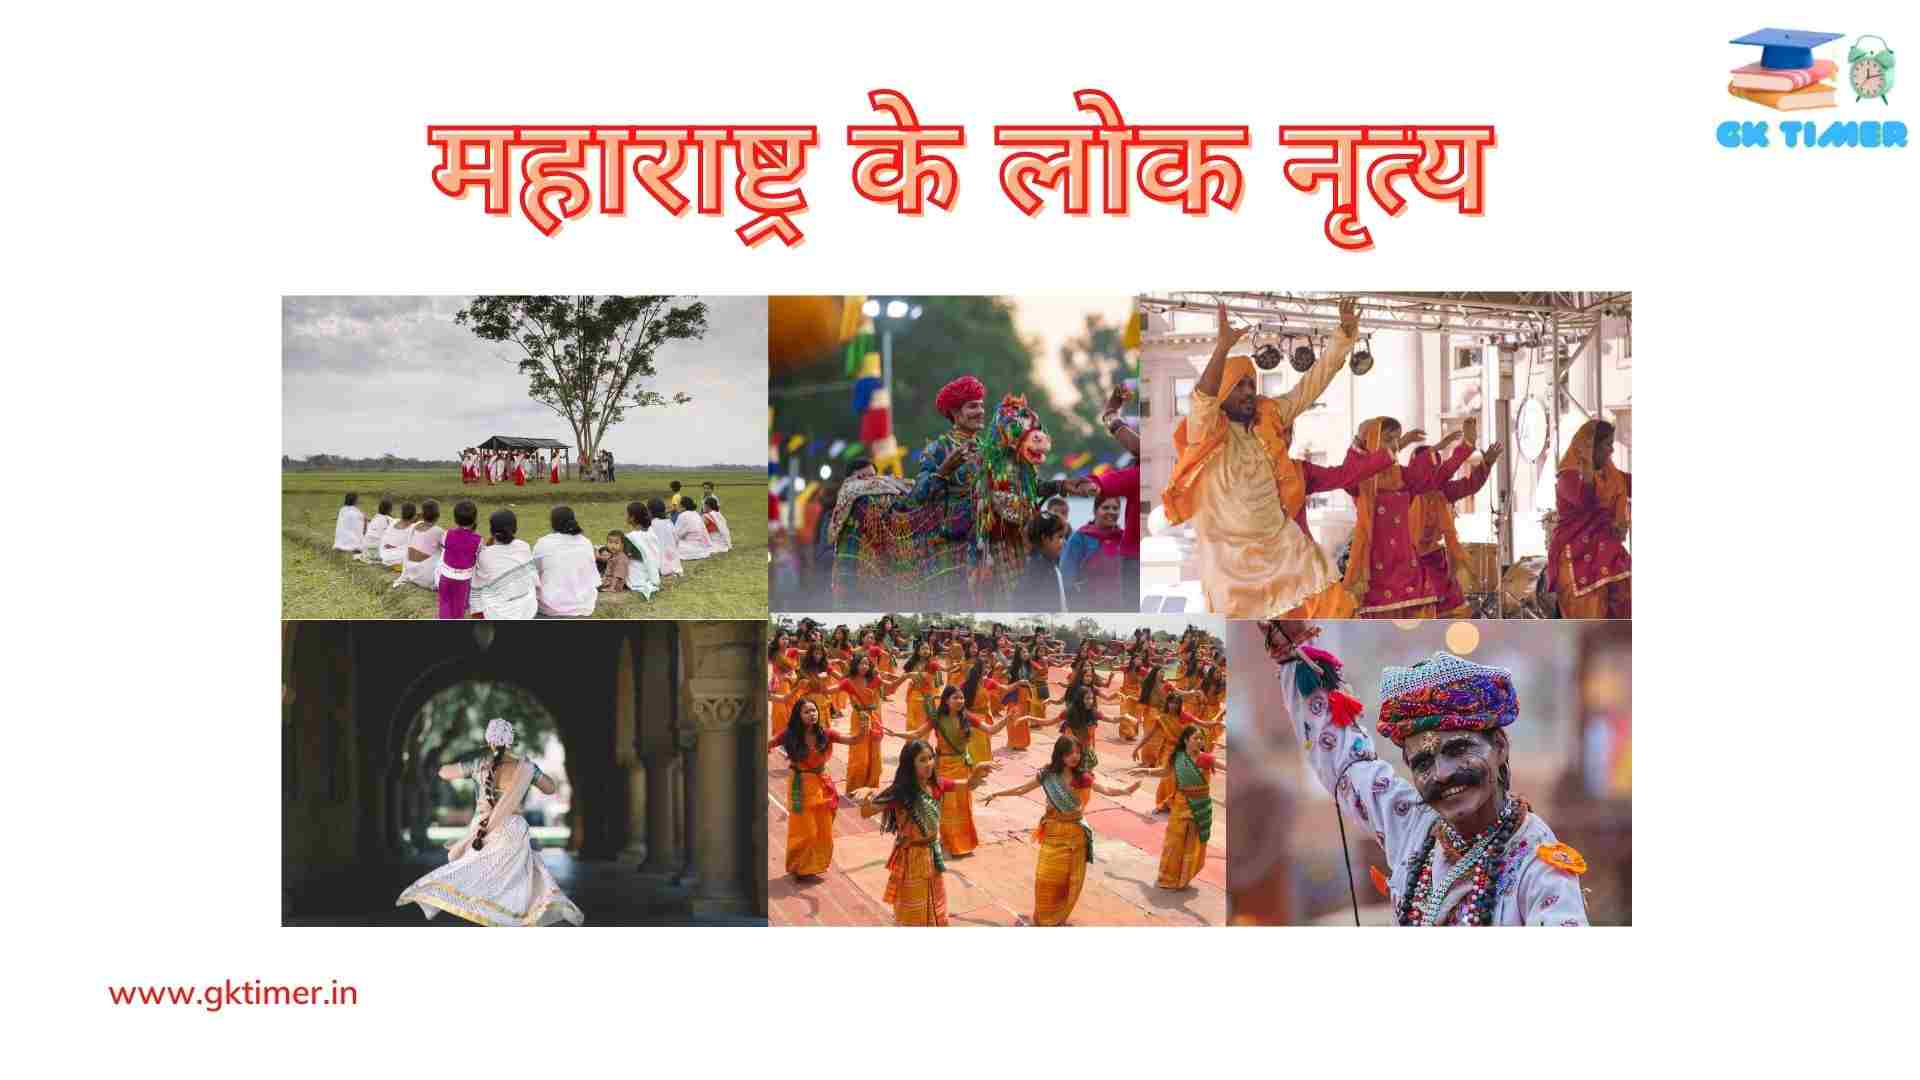 महाराष्ट्र के लोकप्रिय लोक नृत्य(लावणी, तमाशा, कोकिल, डिंडी, धंगारी गज) | Traditional folk dances of Maharashtra in Hindi